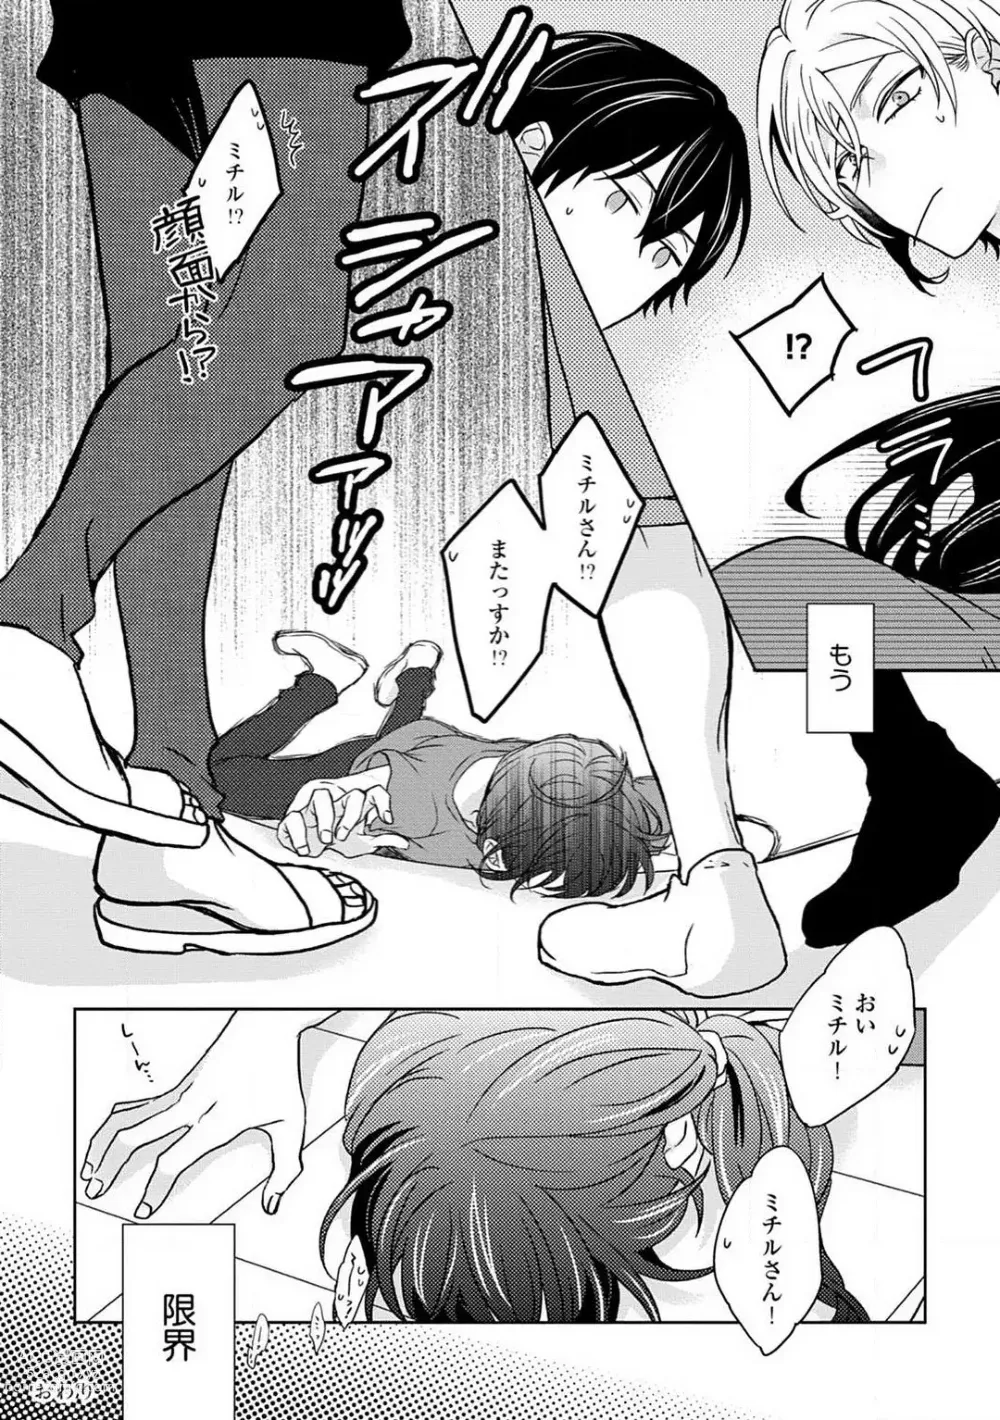 Page 212 of manga Namida Chūihō 〜 Ikemen-tachi ni go Chūi Kudasai 〜 1-10